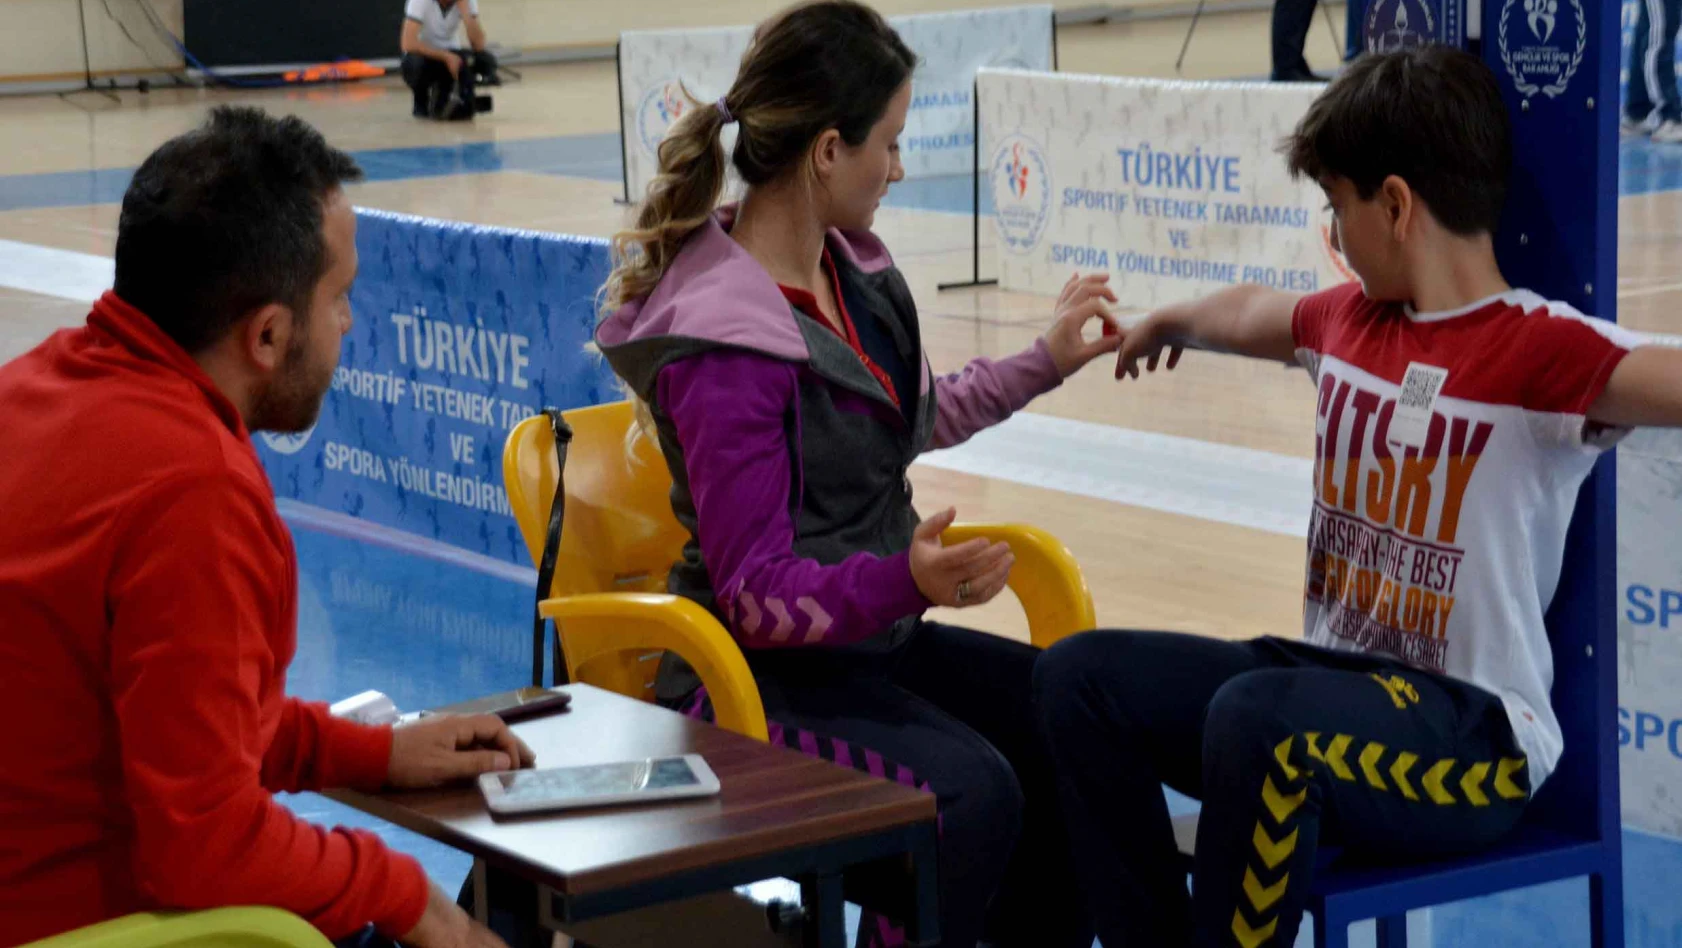 Kayseri'de yetenekli sporcular taramadan geçiriliyor